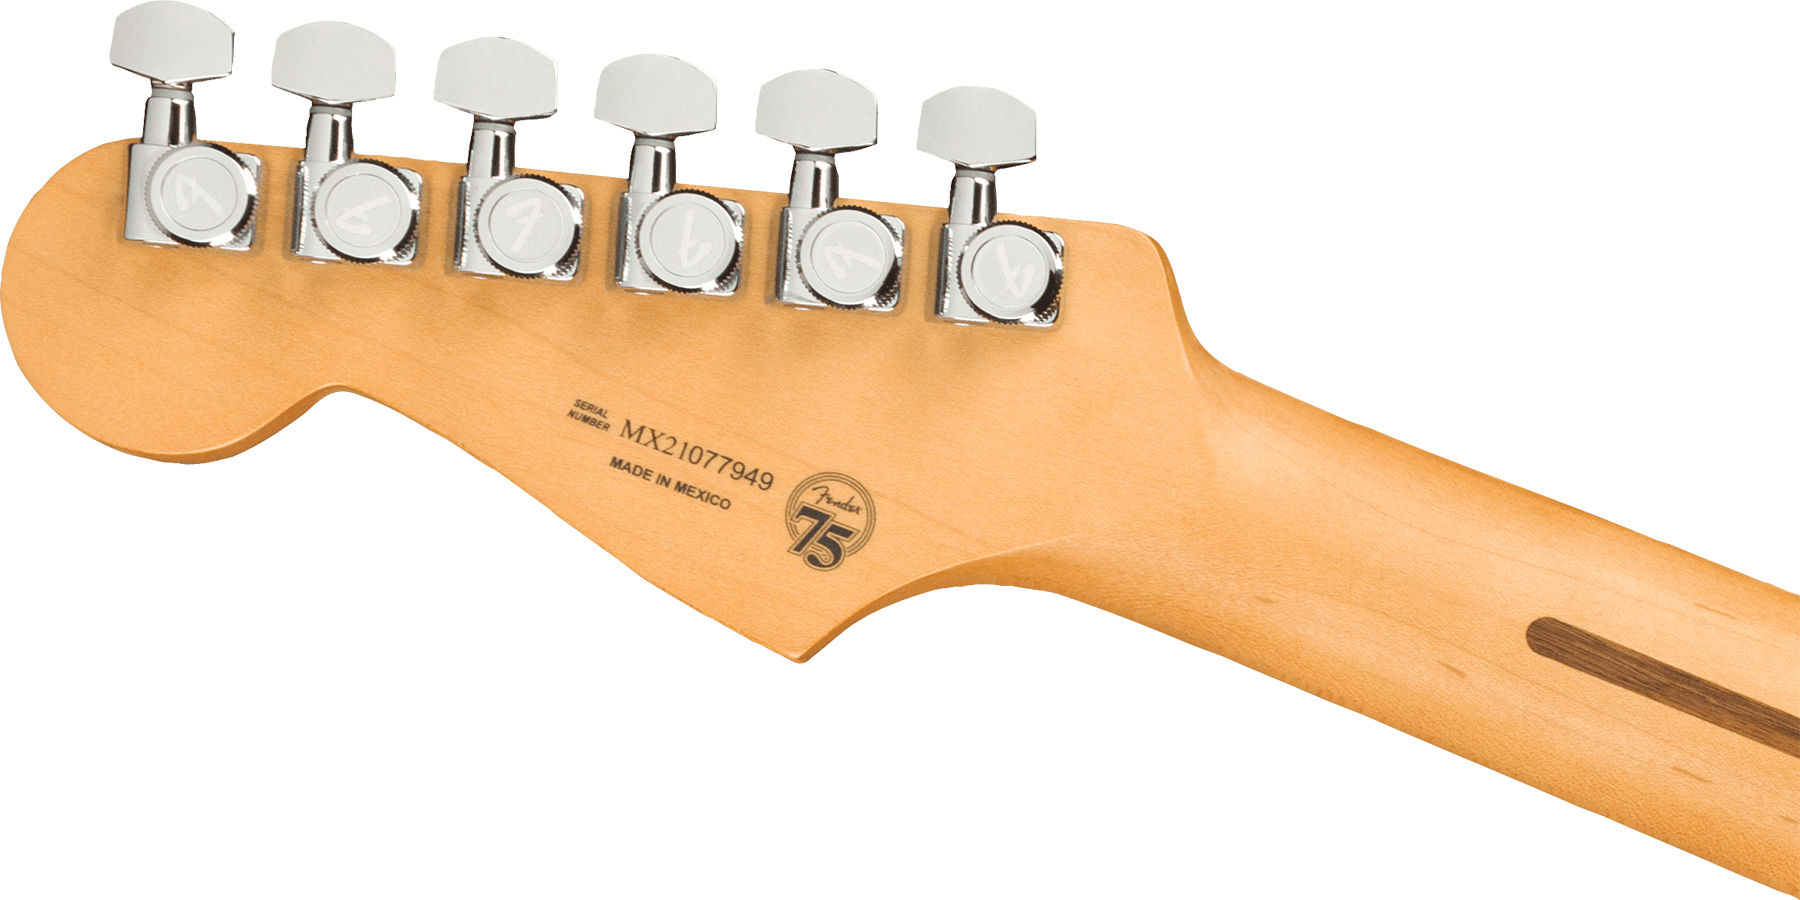 Fender Strat Player Plus Mex 3s Trem Mn - 3-color Sunburst - E-Gitarre in Str-Form - Variation 3